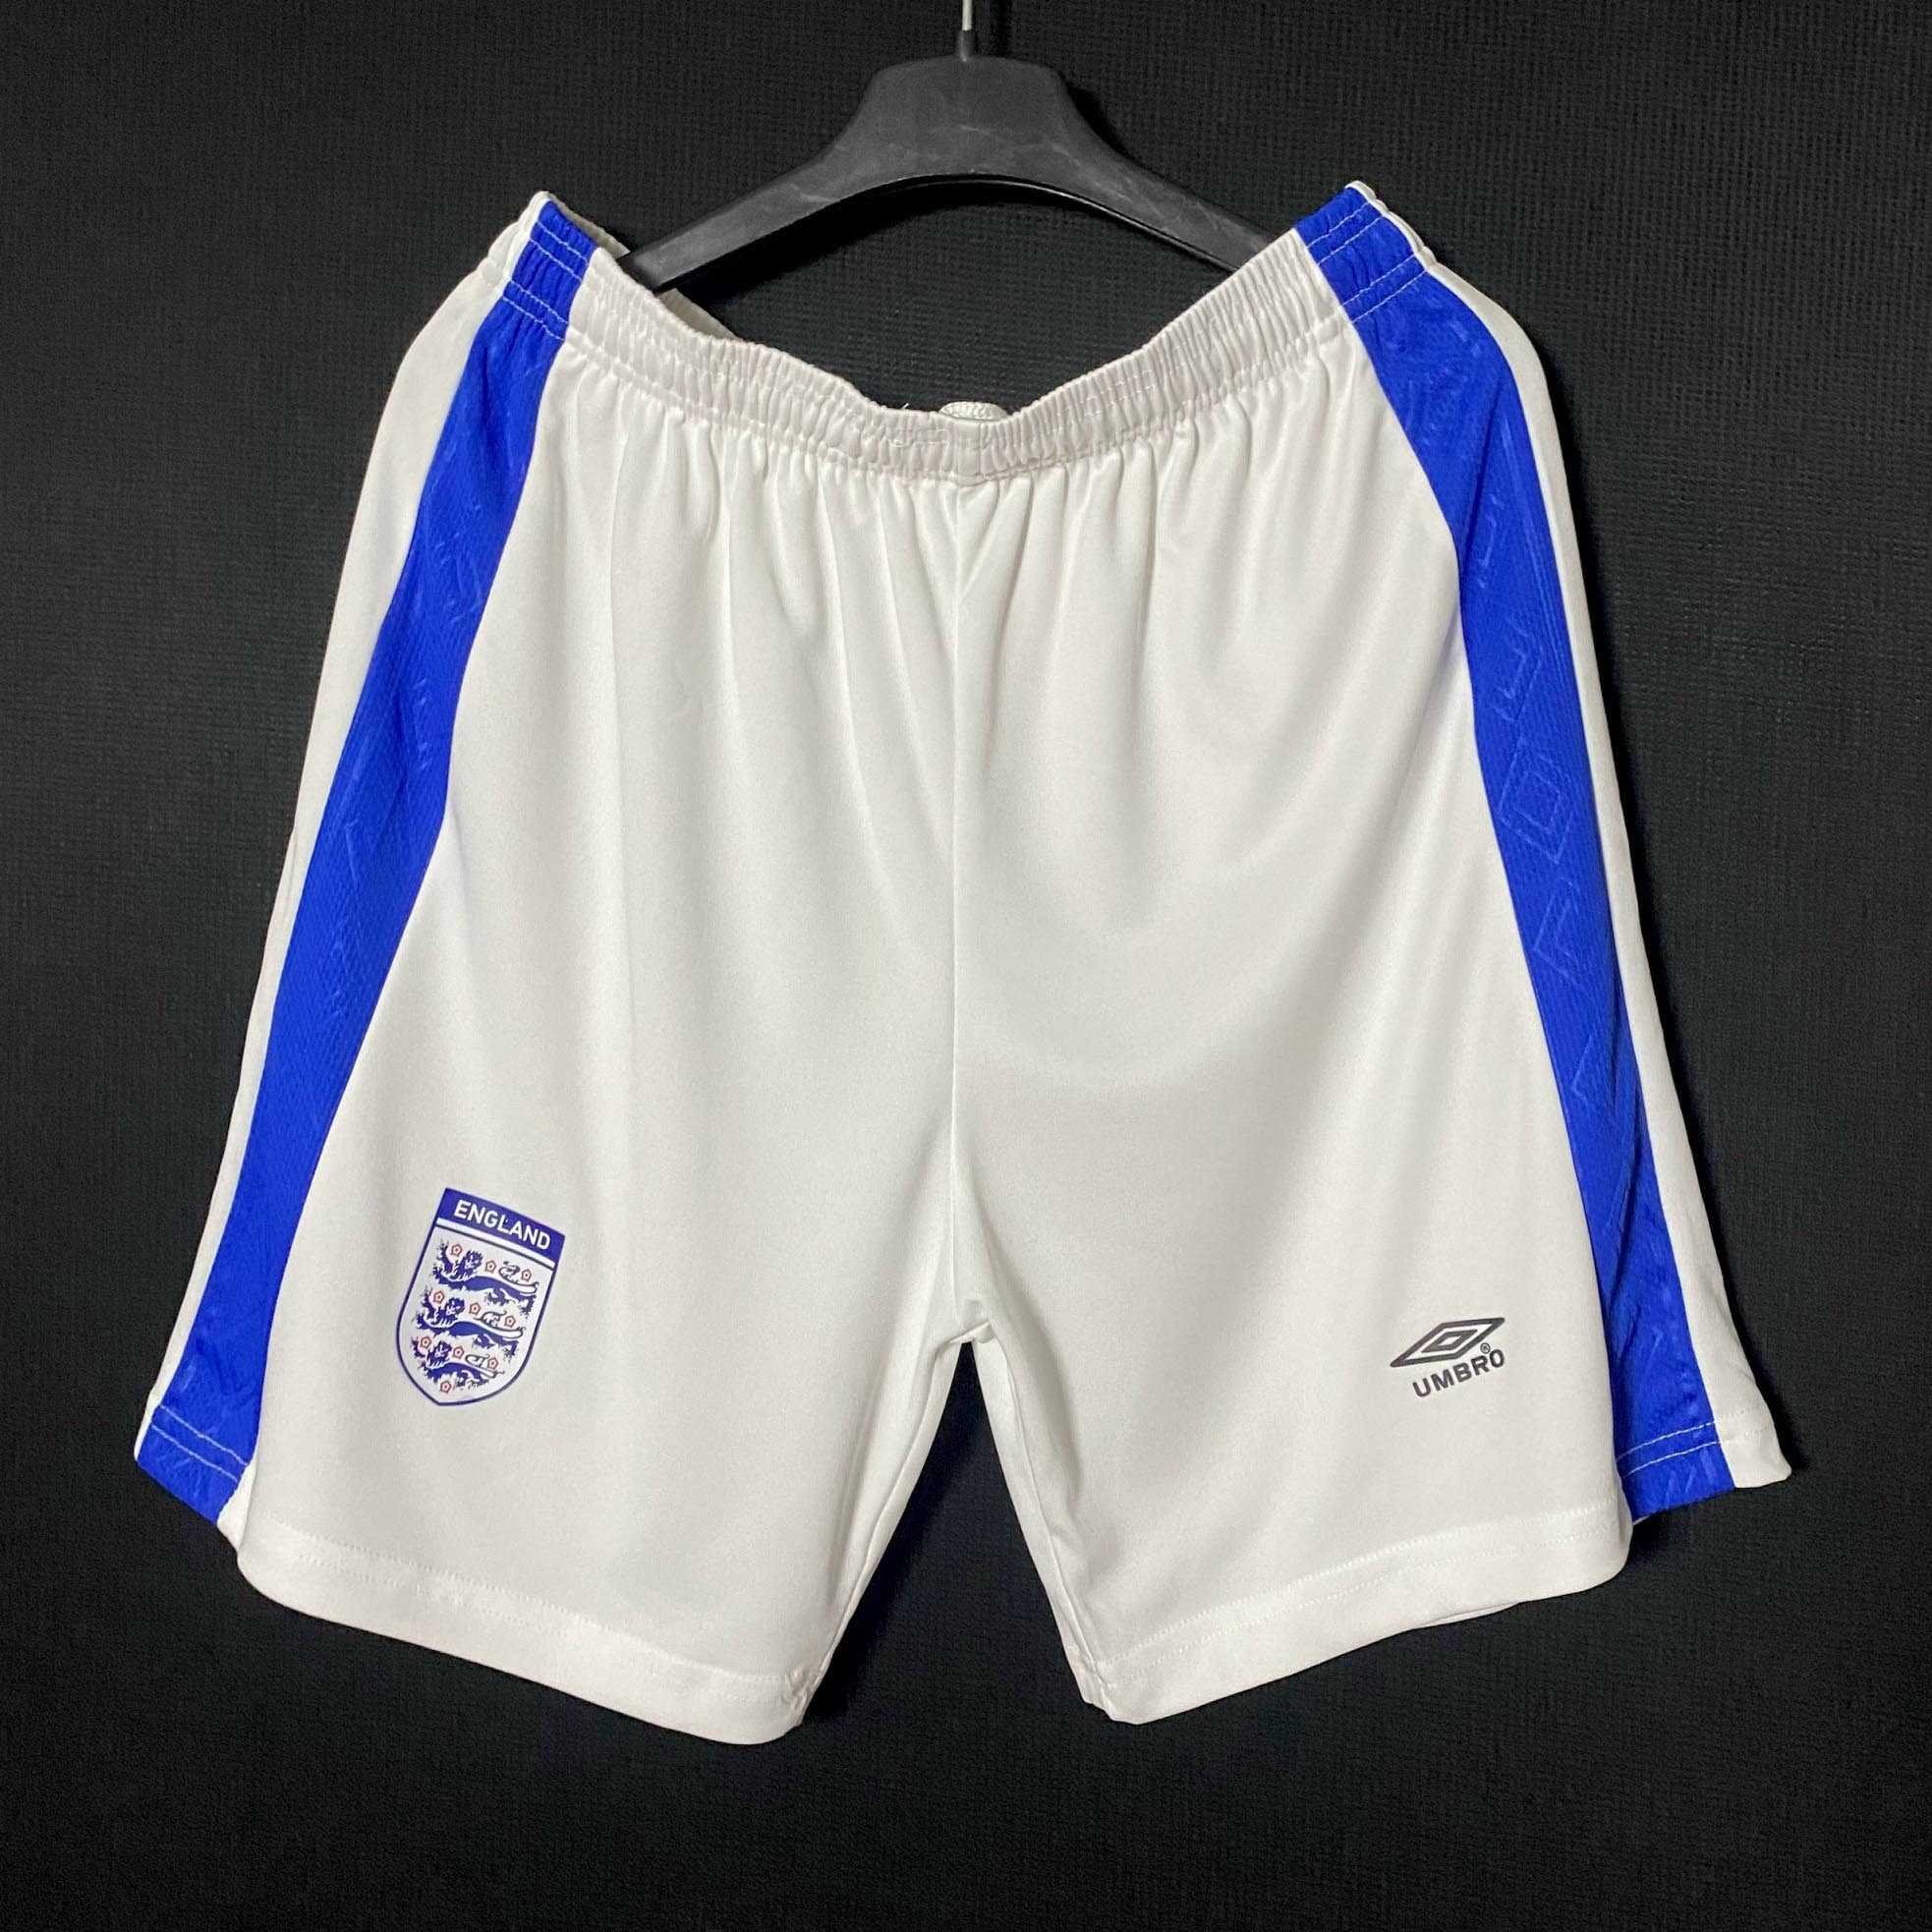 Bộ quần áo đá bóng đội tuyển anh năm 2000 logo england umbro màu xanh biển đậm vải thái trước